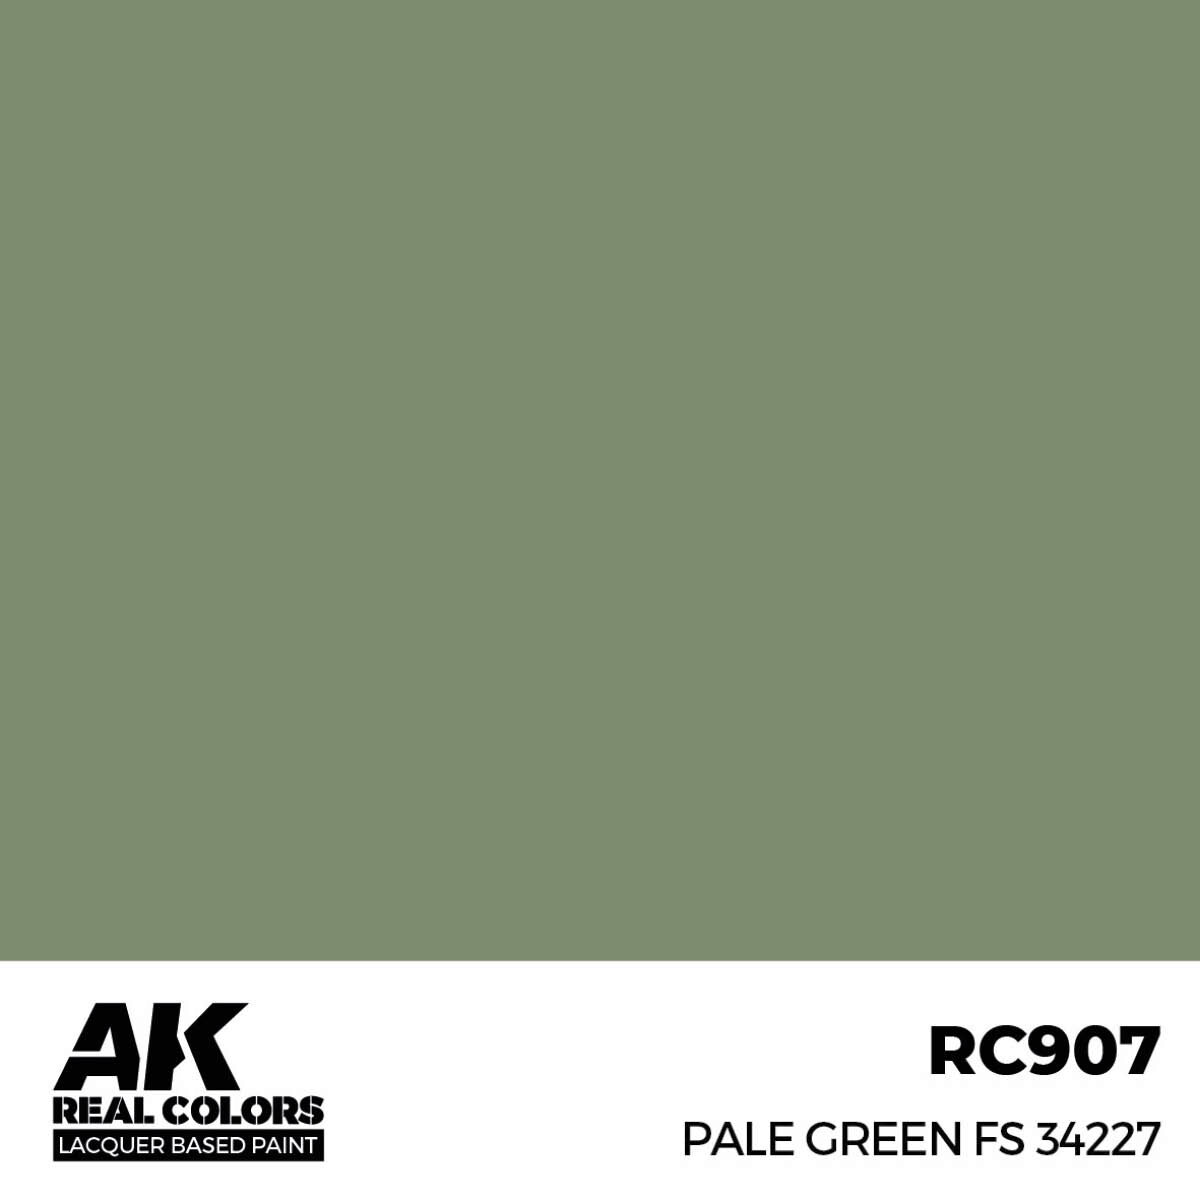 AK RC907 Real Colors Pale Green FS 34227 17 ml.